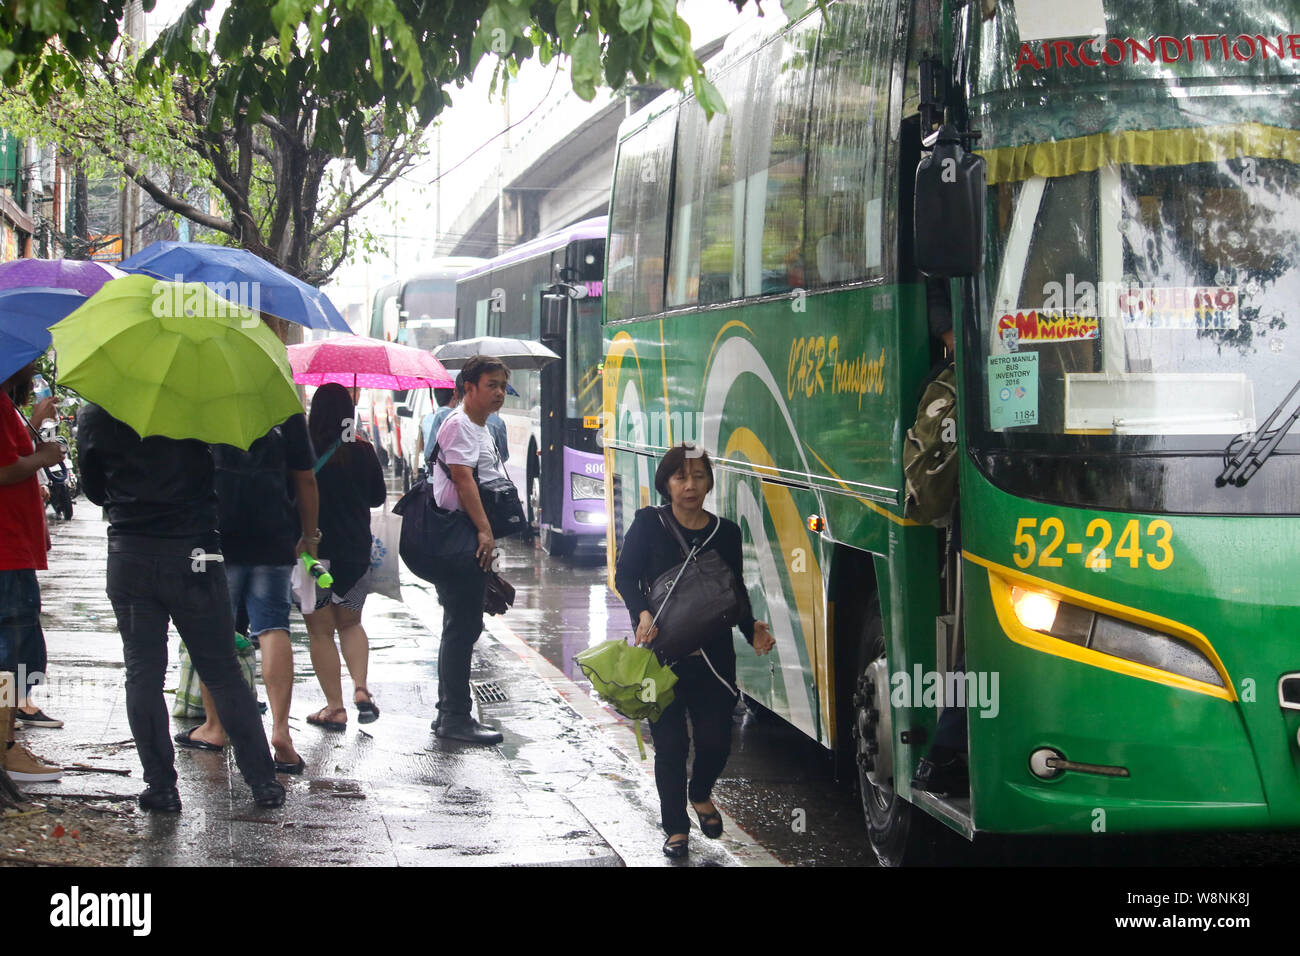 Quezon City, Philippinen. 09 Aug, 2019. Die Menschen halten es Sonnenschirme beim Gehen auf der Straße auf eine moderate Regen und Wind. Um 3:00 PM heute, das Auge des Taifuns "Hanna" wurde auf der Grundlage aller verfügbaren Daten bei ° 505 km nordöstlich von Basco, Batanes mit maximal unterstützte Winde von 185 km/h in der Nähe des Zentrums und gustiness von bis zu 230 km/h. HANNA" wird erwartet, dass die Philippinische Verantwortungsbereich (PAR) Ausfahrt zwischen 11:30 Uhr heute abend und 2:00 Uhr morgen. (Foto von Ismael Michael Dula/Pacific Press) Quelle: Pacific Press Agency/Alamy leben Nachrichten Stockfoto